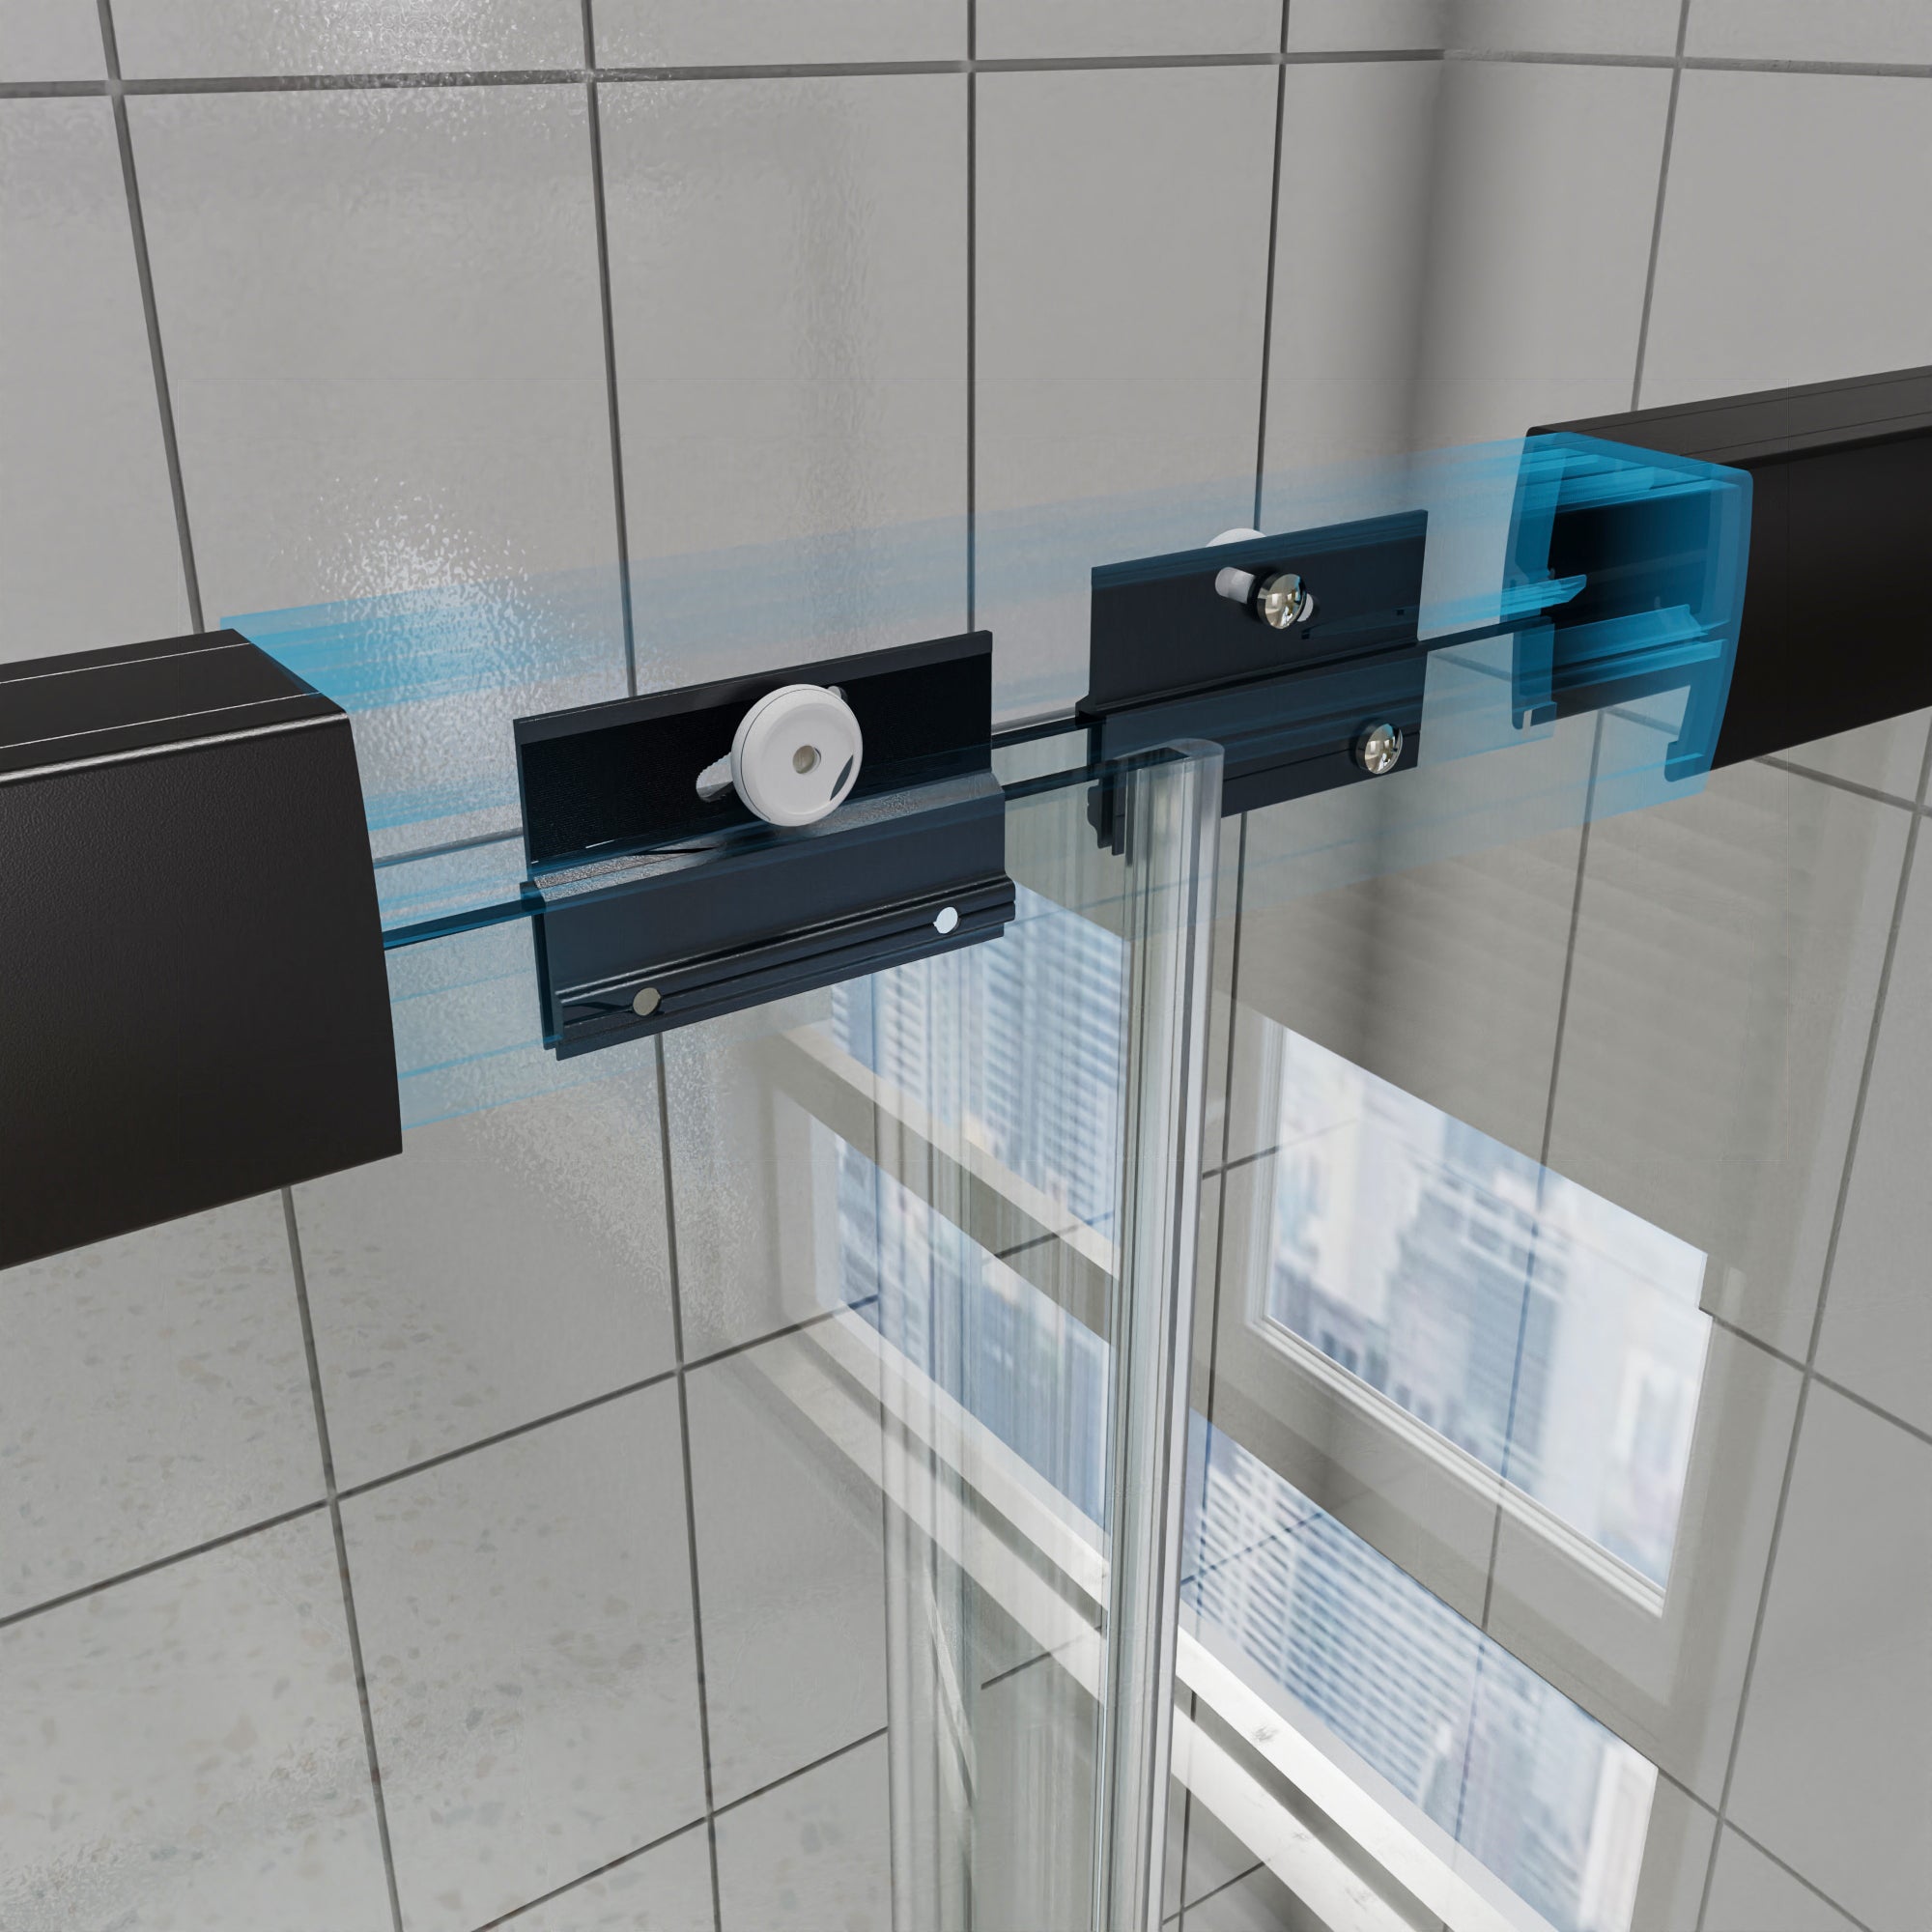 Bathroom Shower Door Ideas